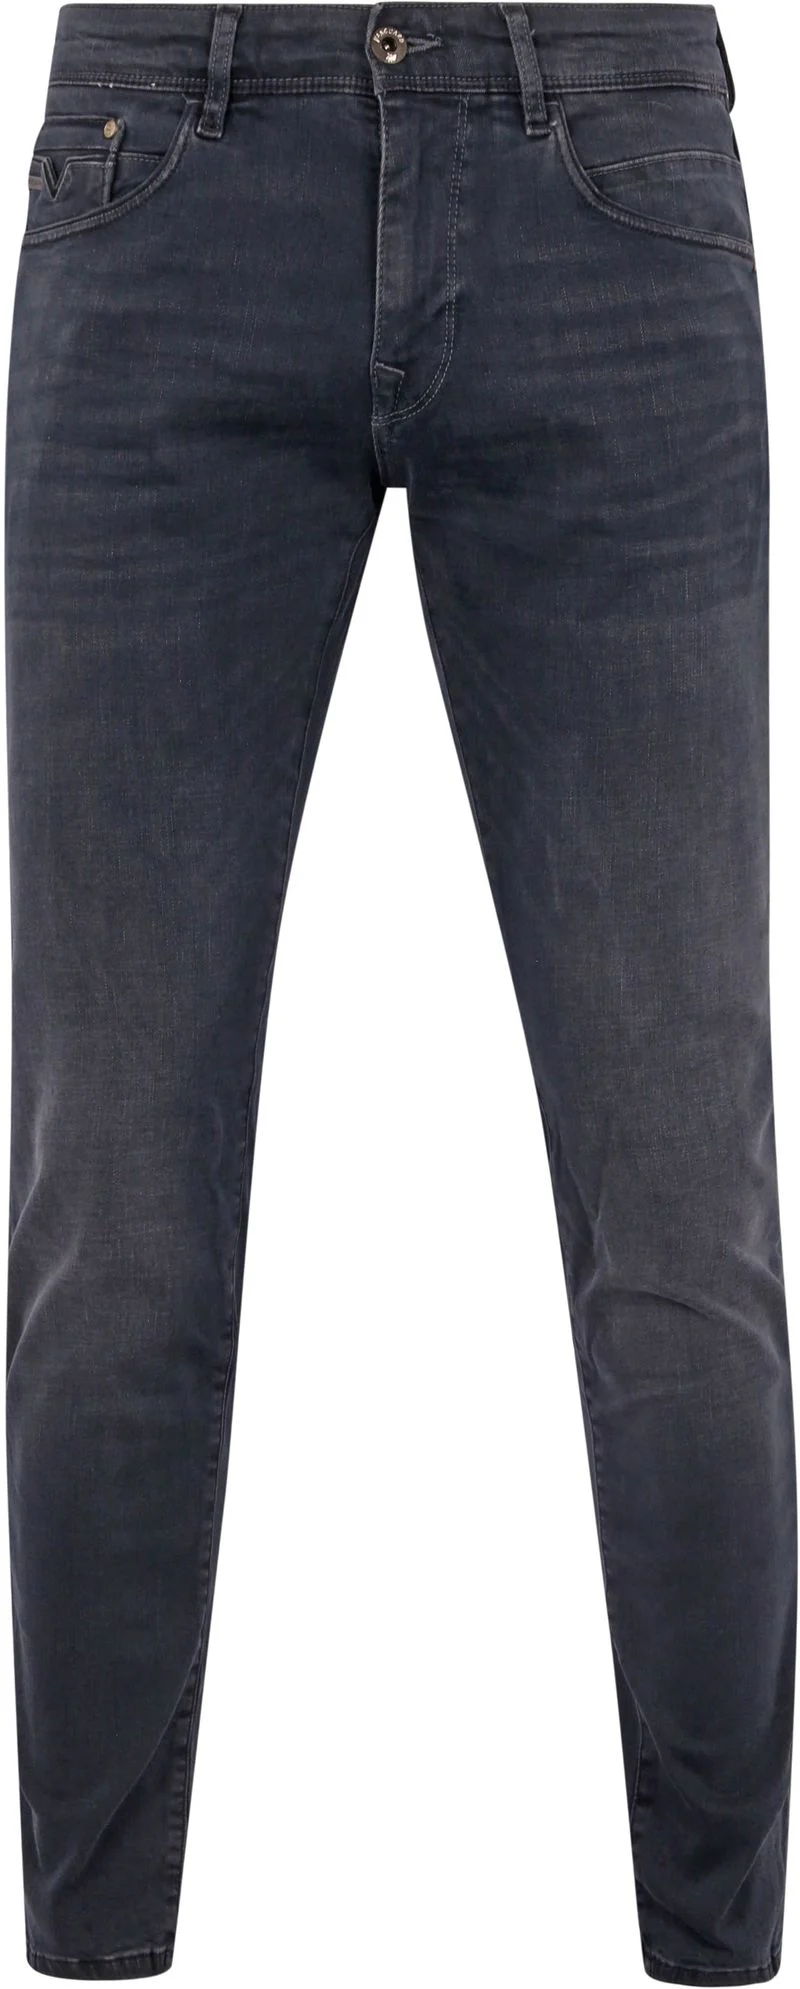 Vanguard Jeans V12 Rider Anthrazit ODB - Größe W 32 - L 30 günstig online kaufen